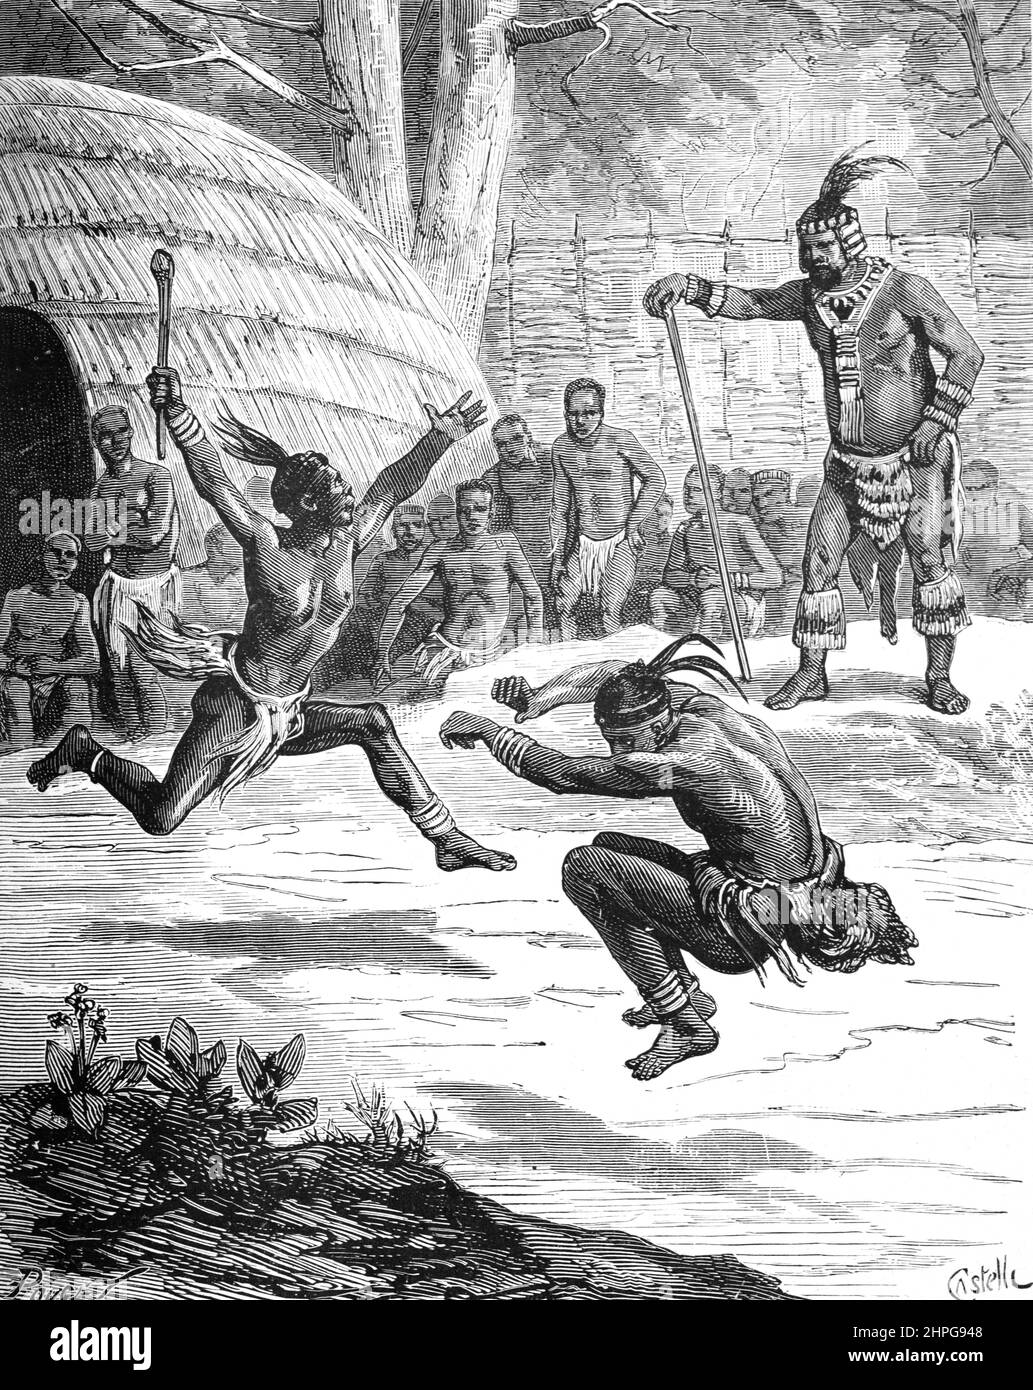 Zulu Village & Tänzer im Süden oder Südafrika. Vintage Illustration oder Gravur 1879 (Castelli) Stockfoto